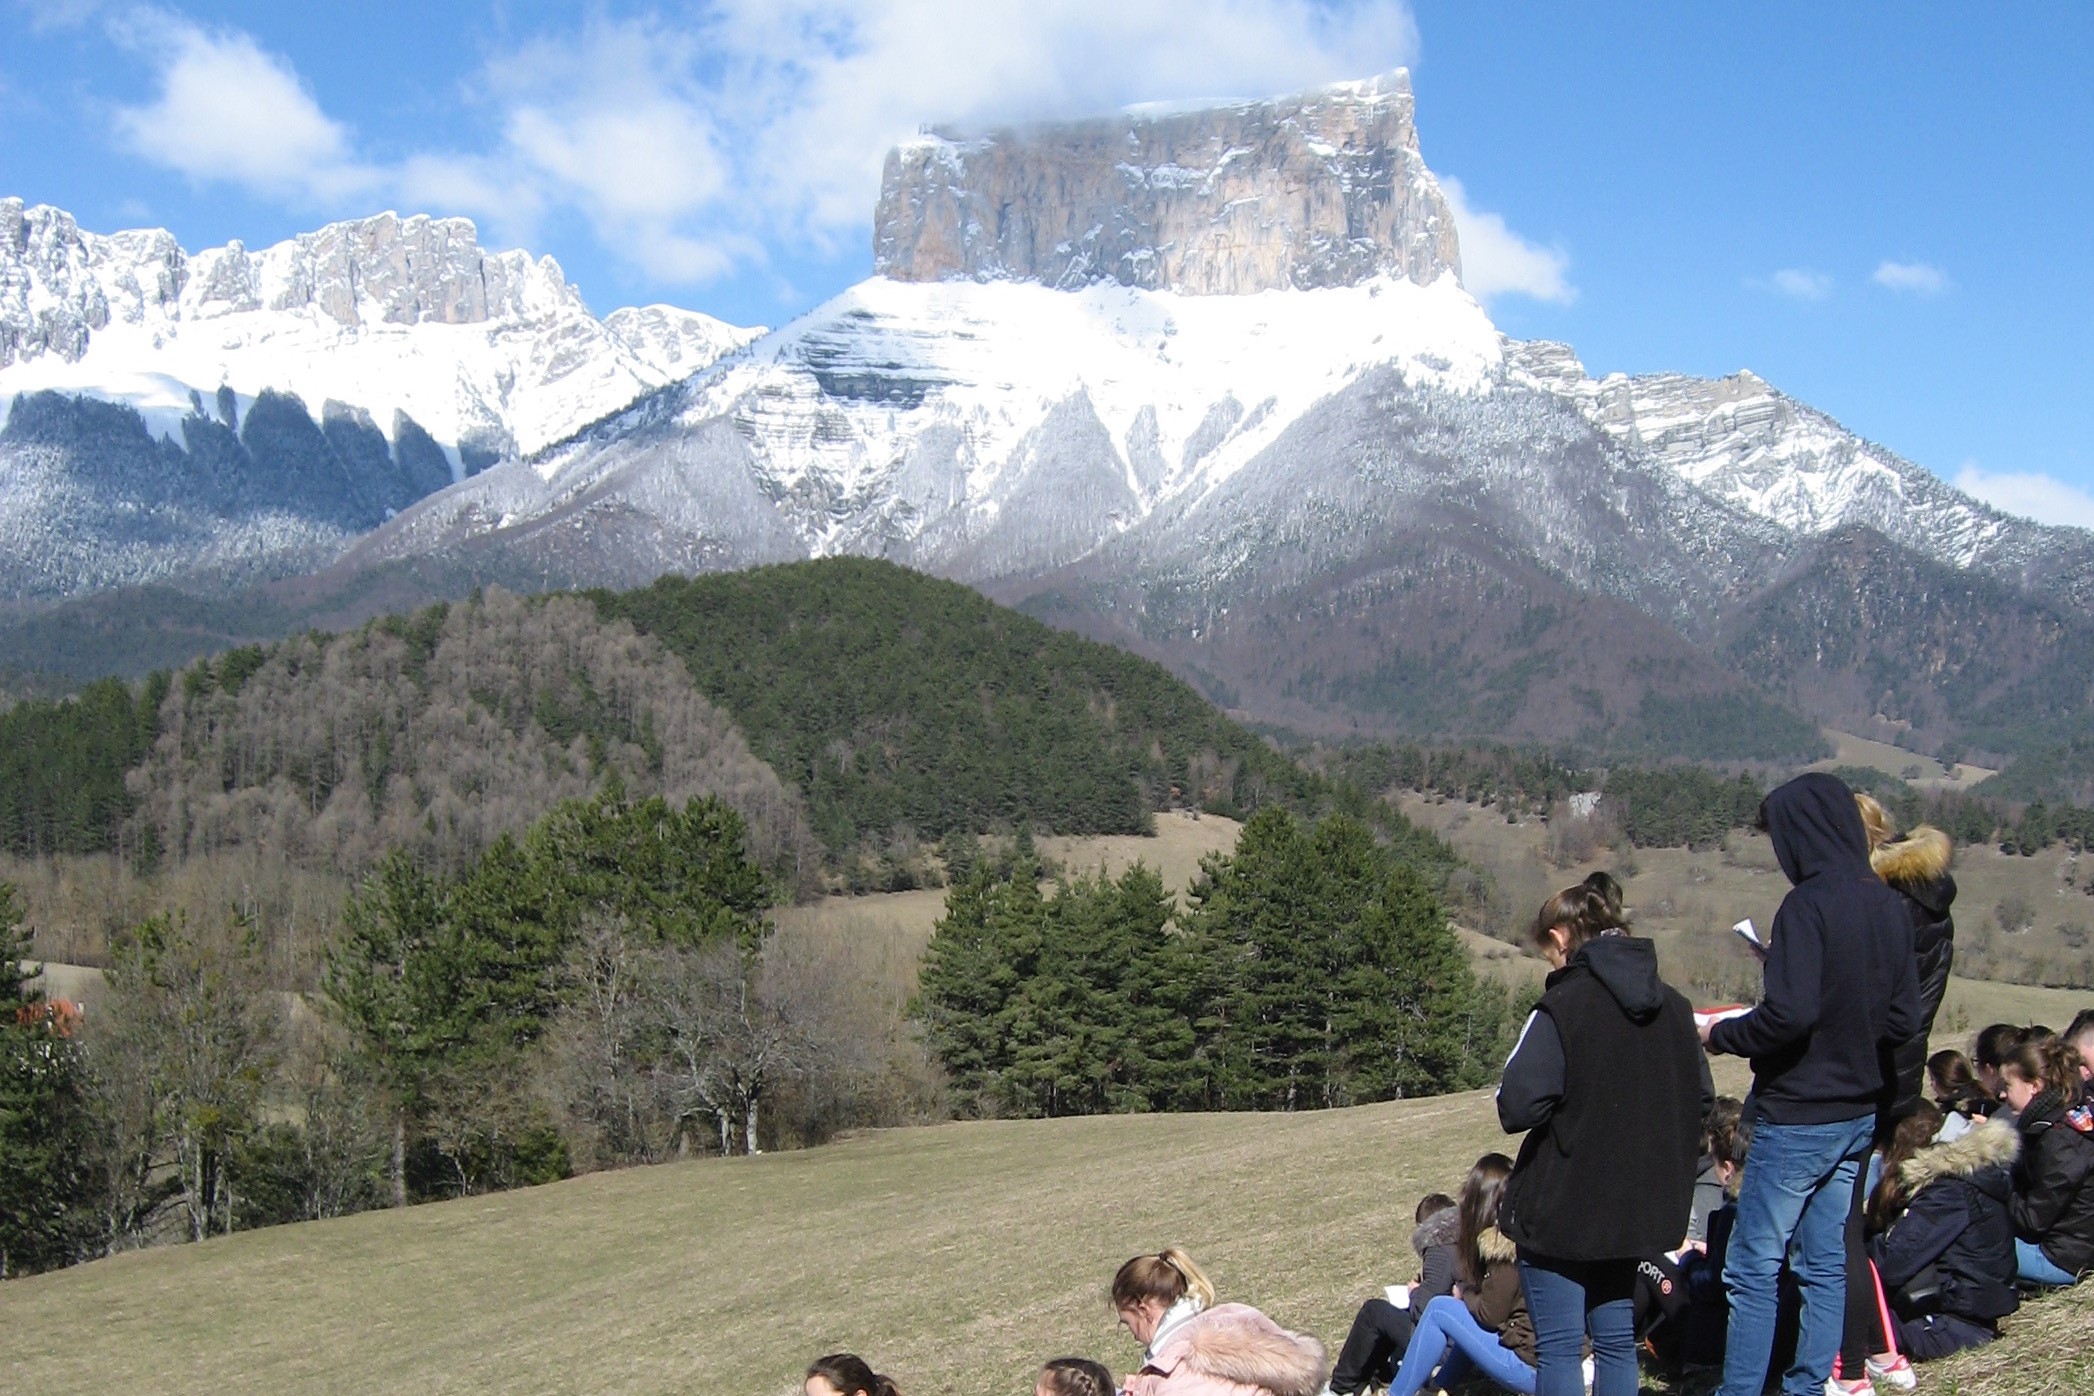 Sortie scolaire d'élèves devant un mont enneigé.